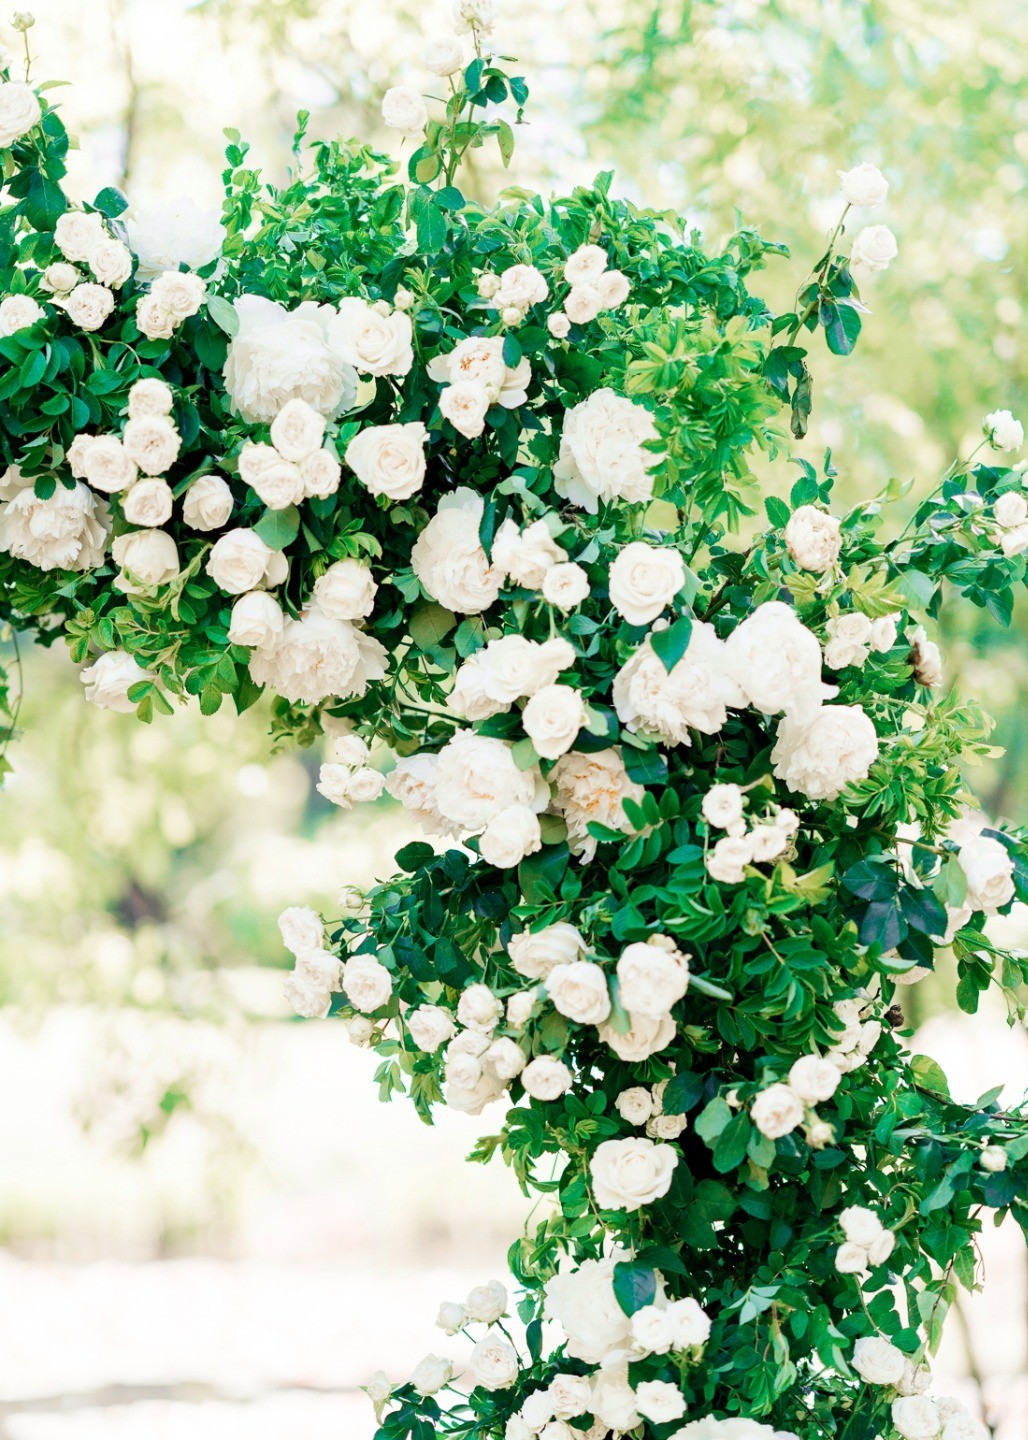 Настоящие романтики: свадьба в белоснежной палитре